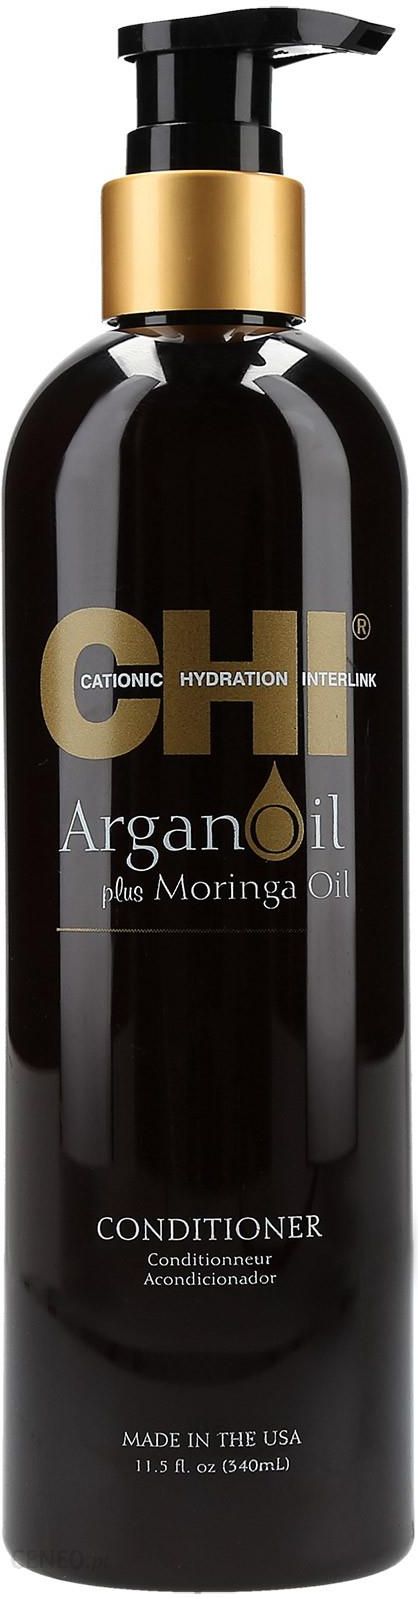 chi odżywka do włosów arganowy argan oil farouk 739 ml